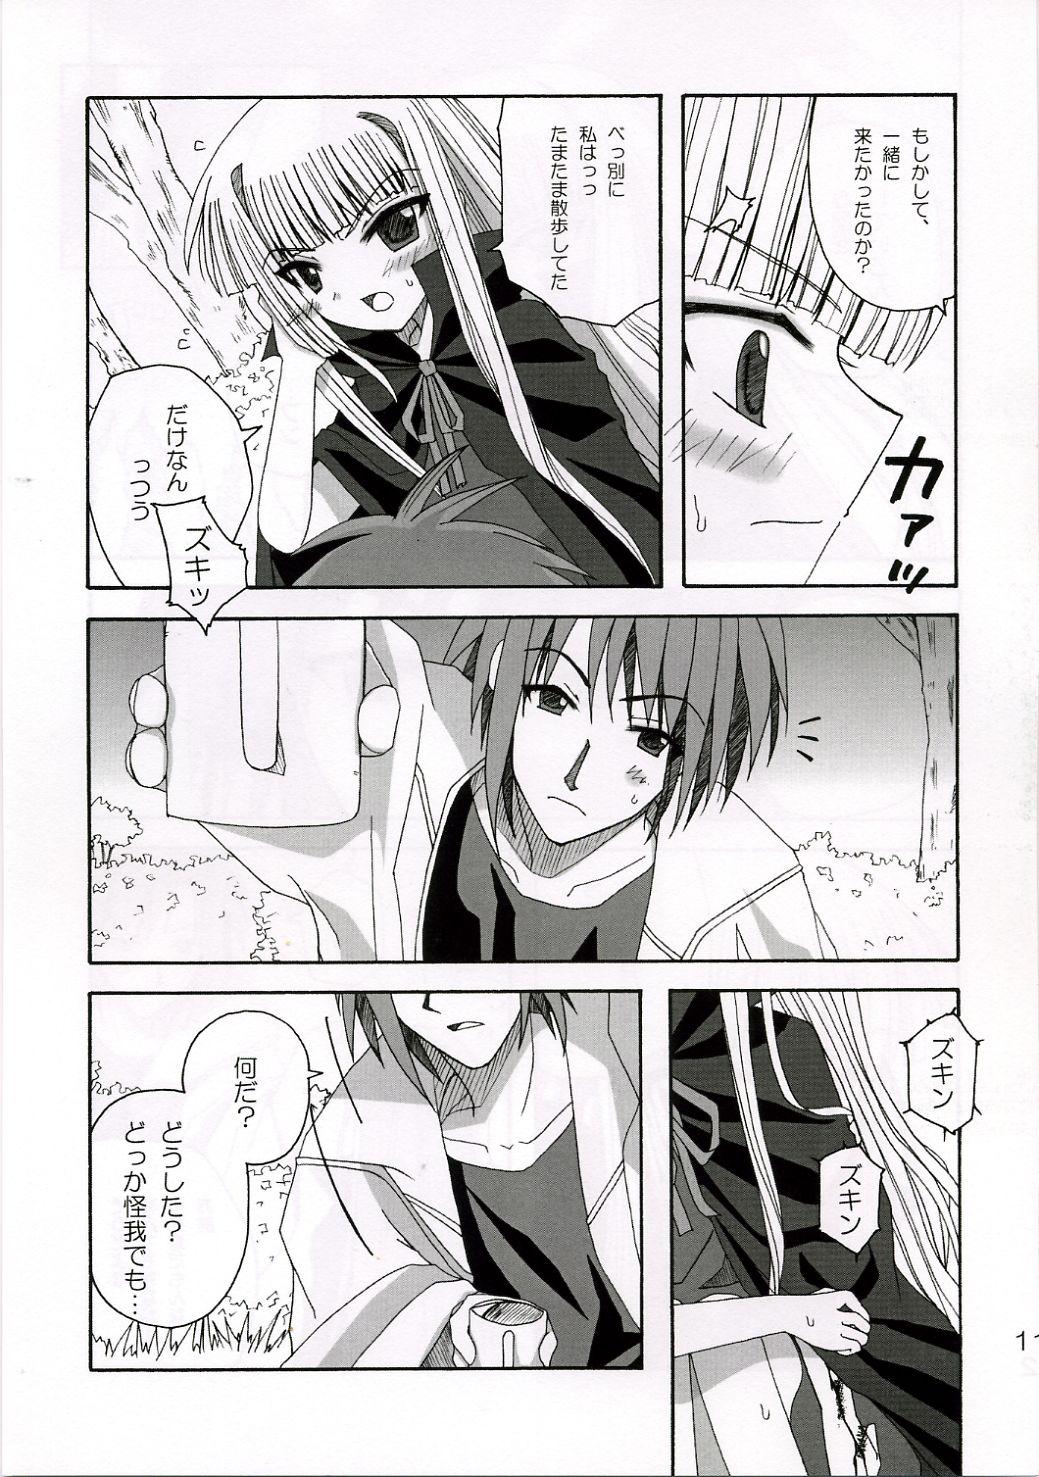 Stepfather SWEET PAIN - Mahou sensei negima Sexy Whores - Page 10